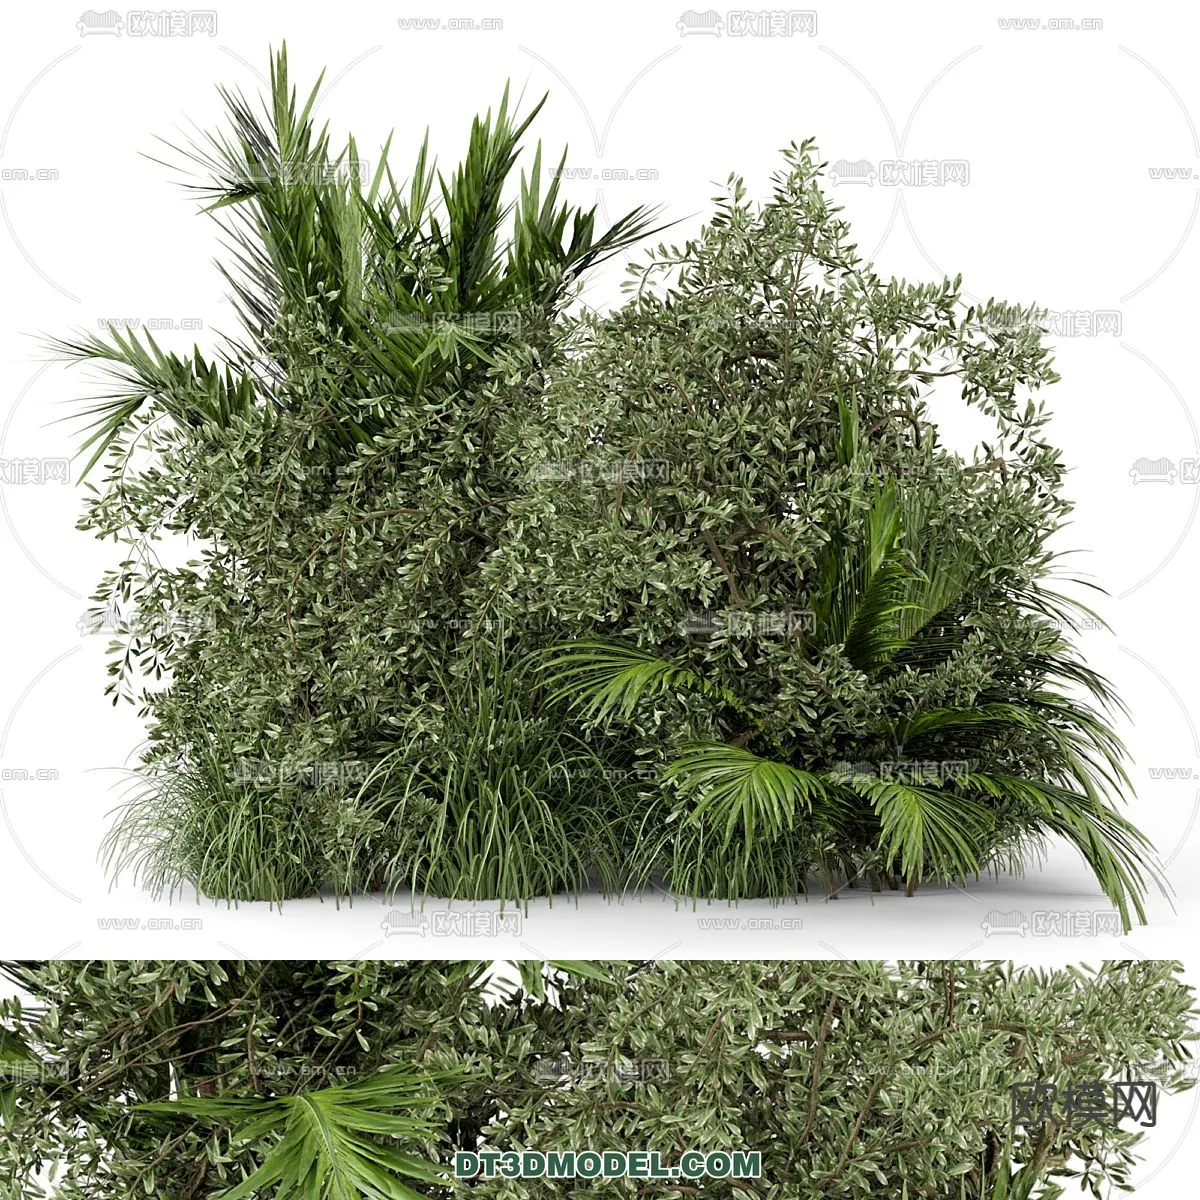 PLANTS – BUSH – CORONA – 3D MODEL – 290